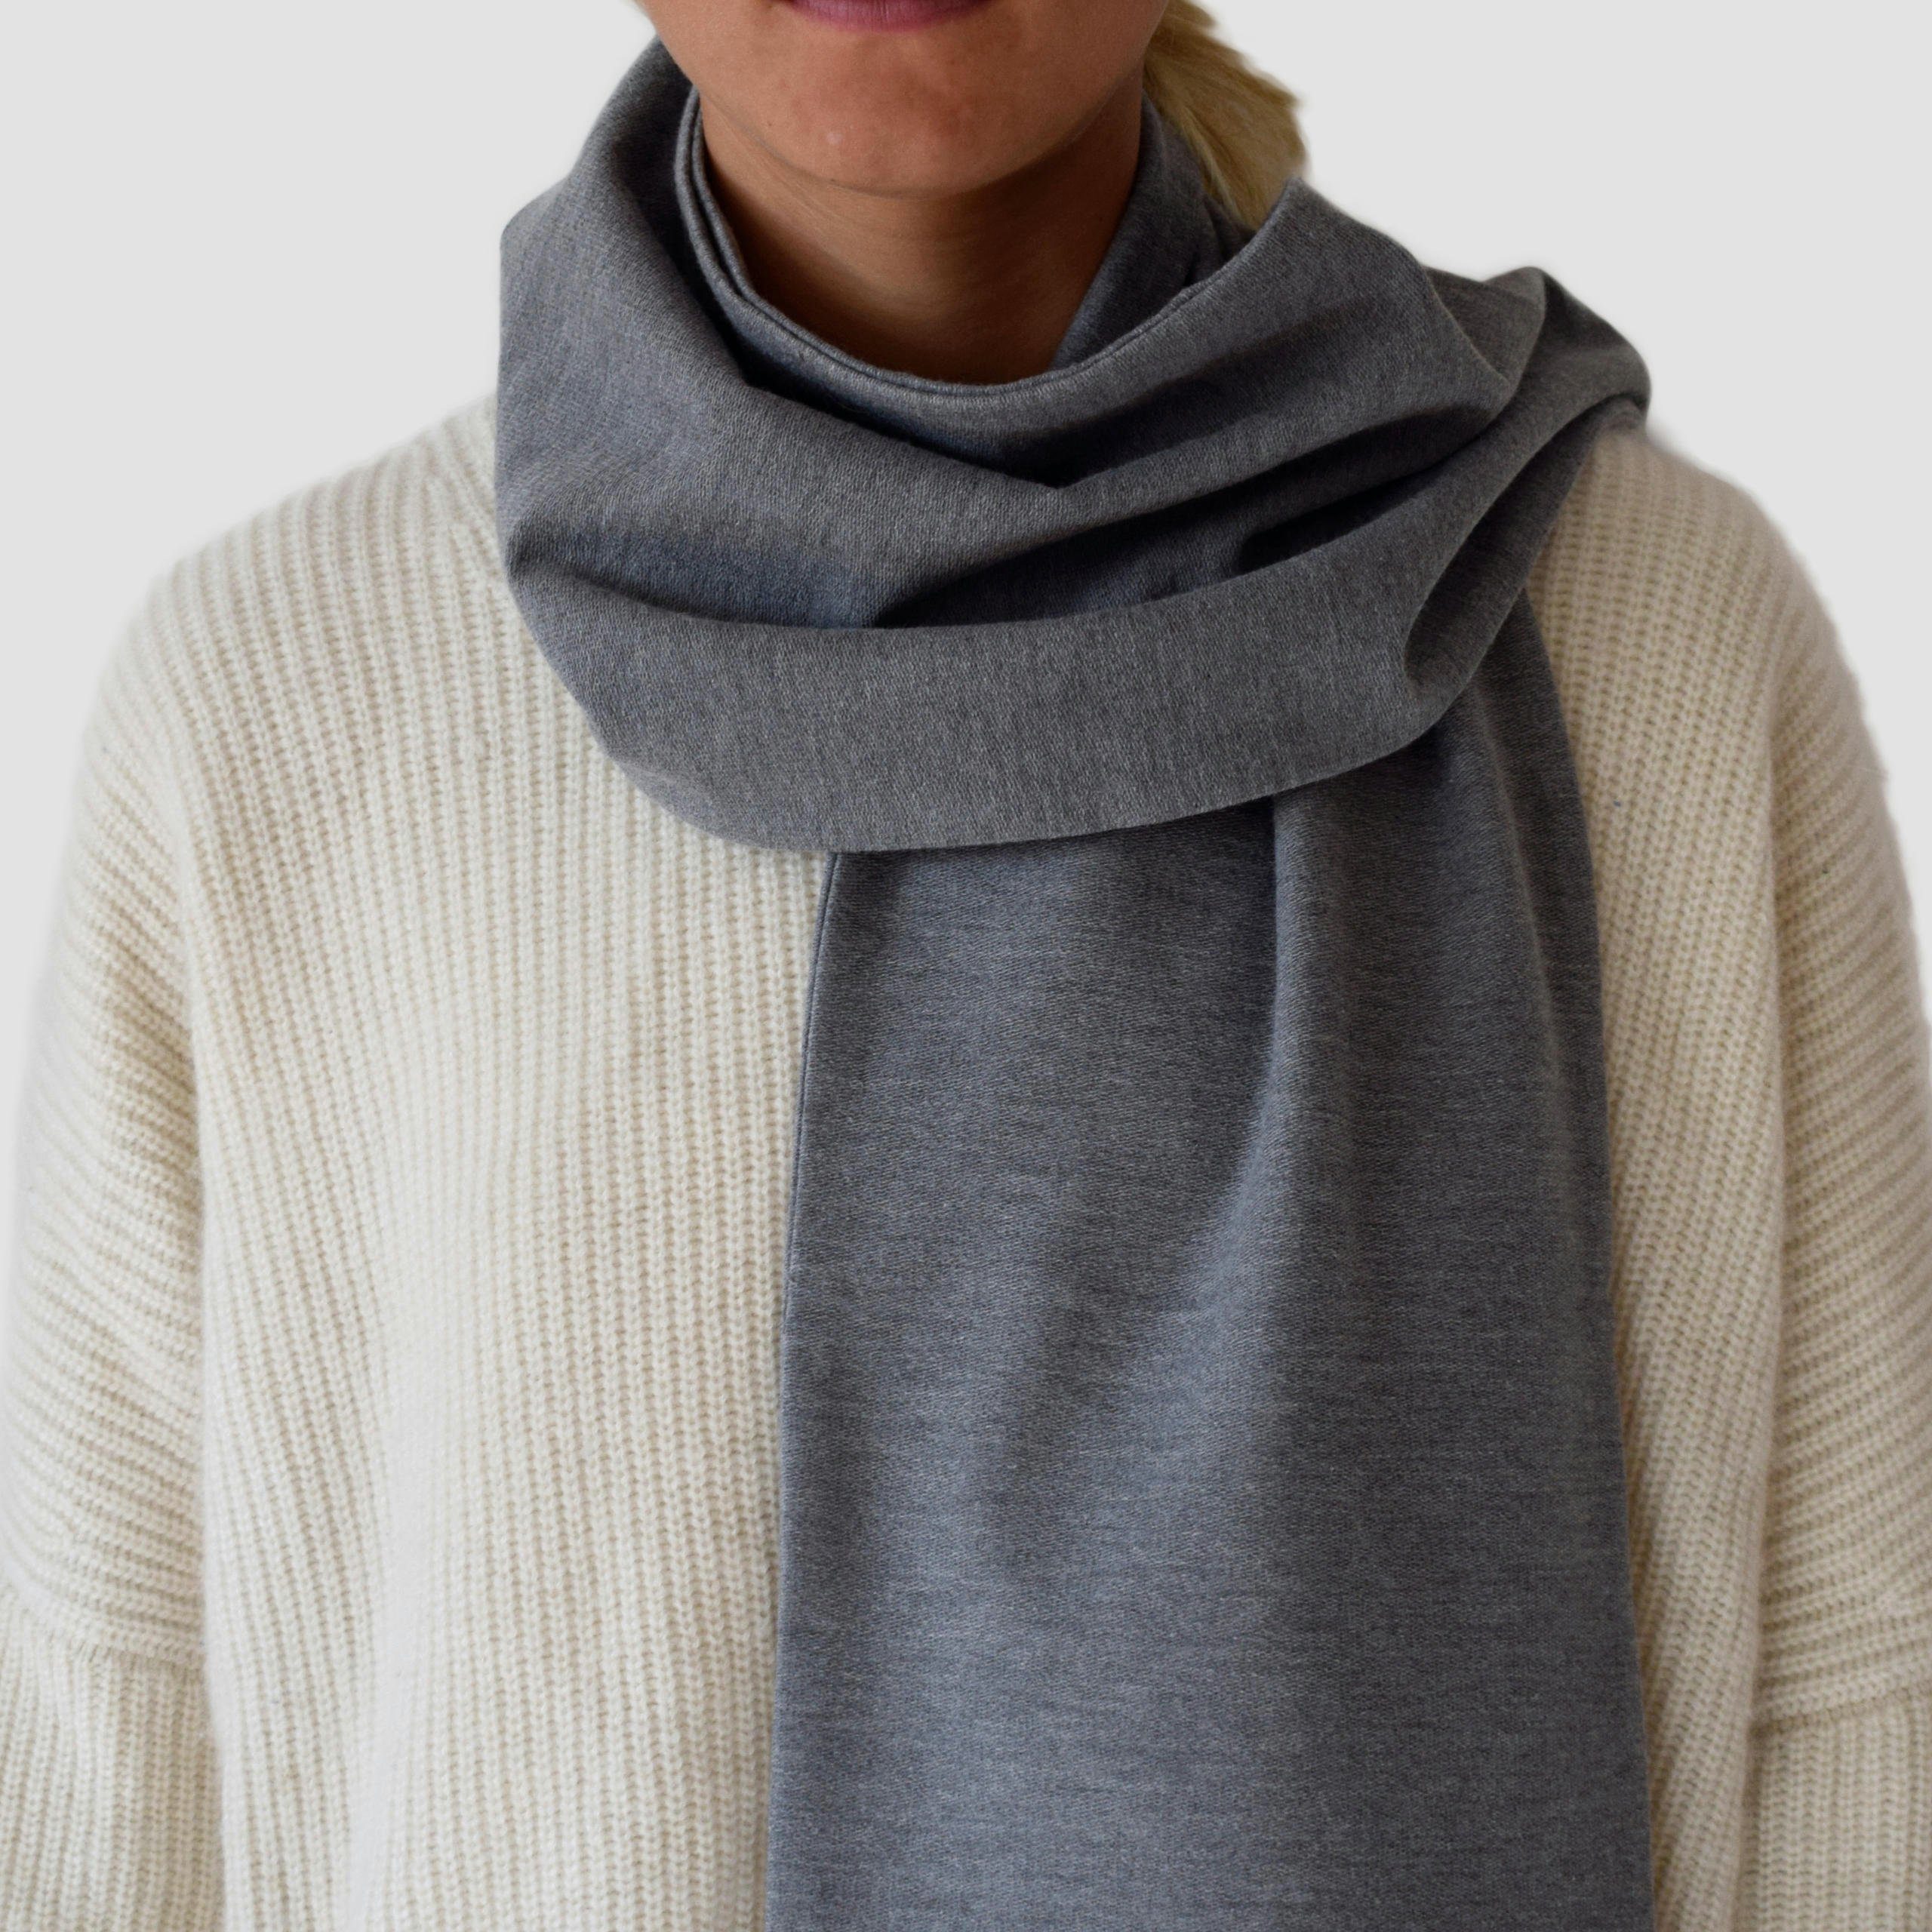 Lou-i Made grau in unisex Germany, Bio-Baumwolle hergestellt Halstuch Schal in Deutschland